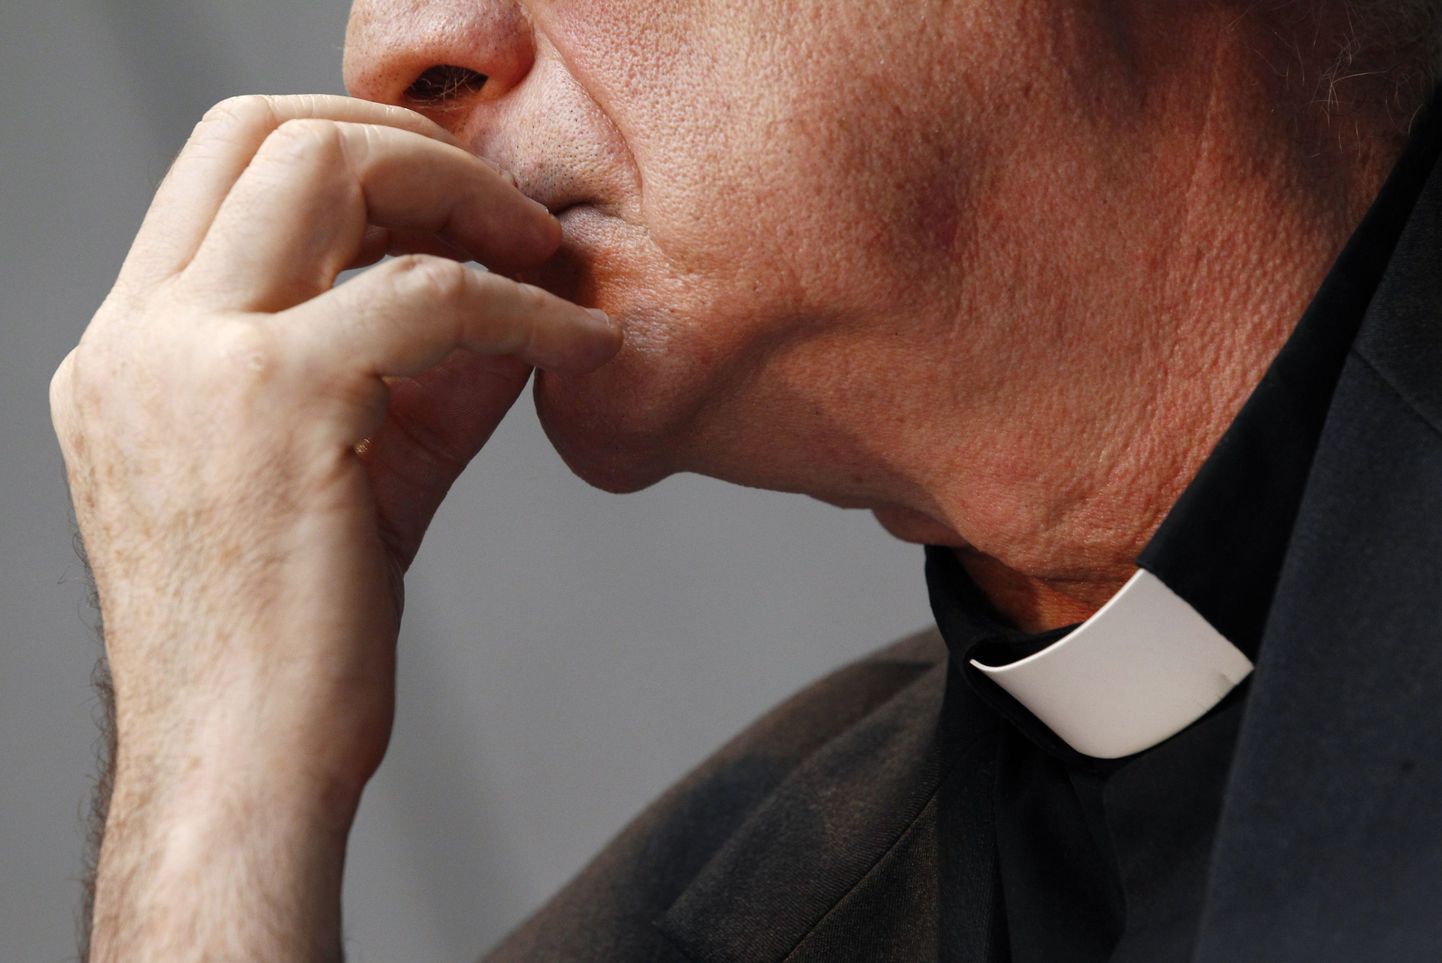 Hollandi katoliku kirikus on paljastunud üle 900 pedofiiliajuhtumi